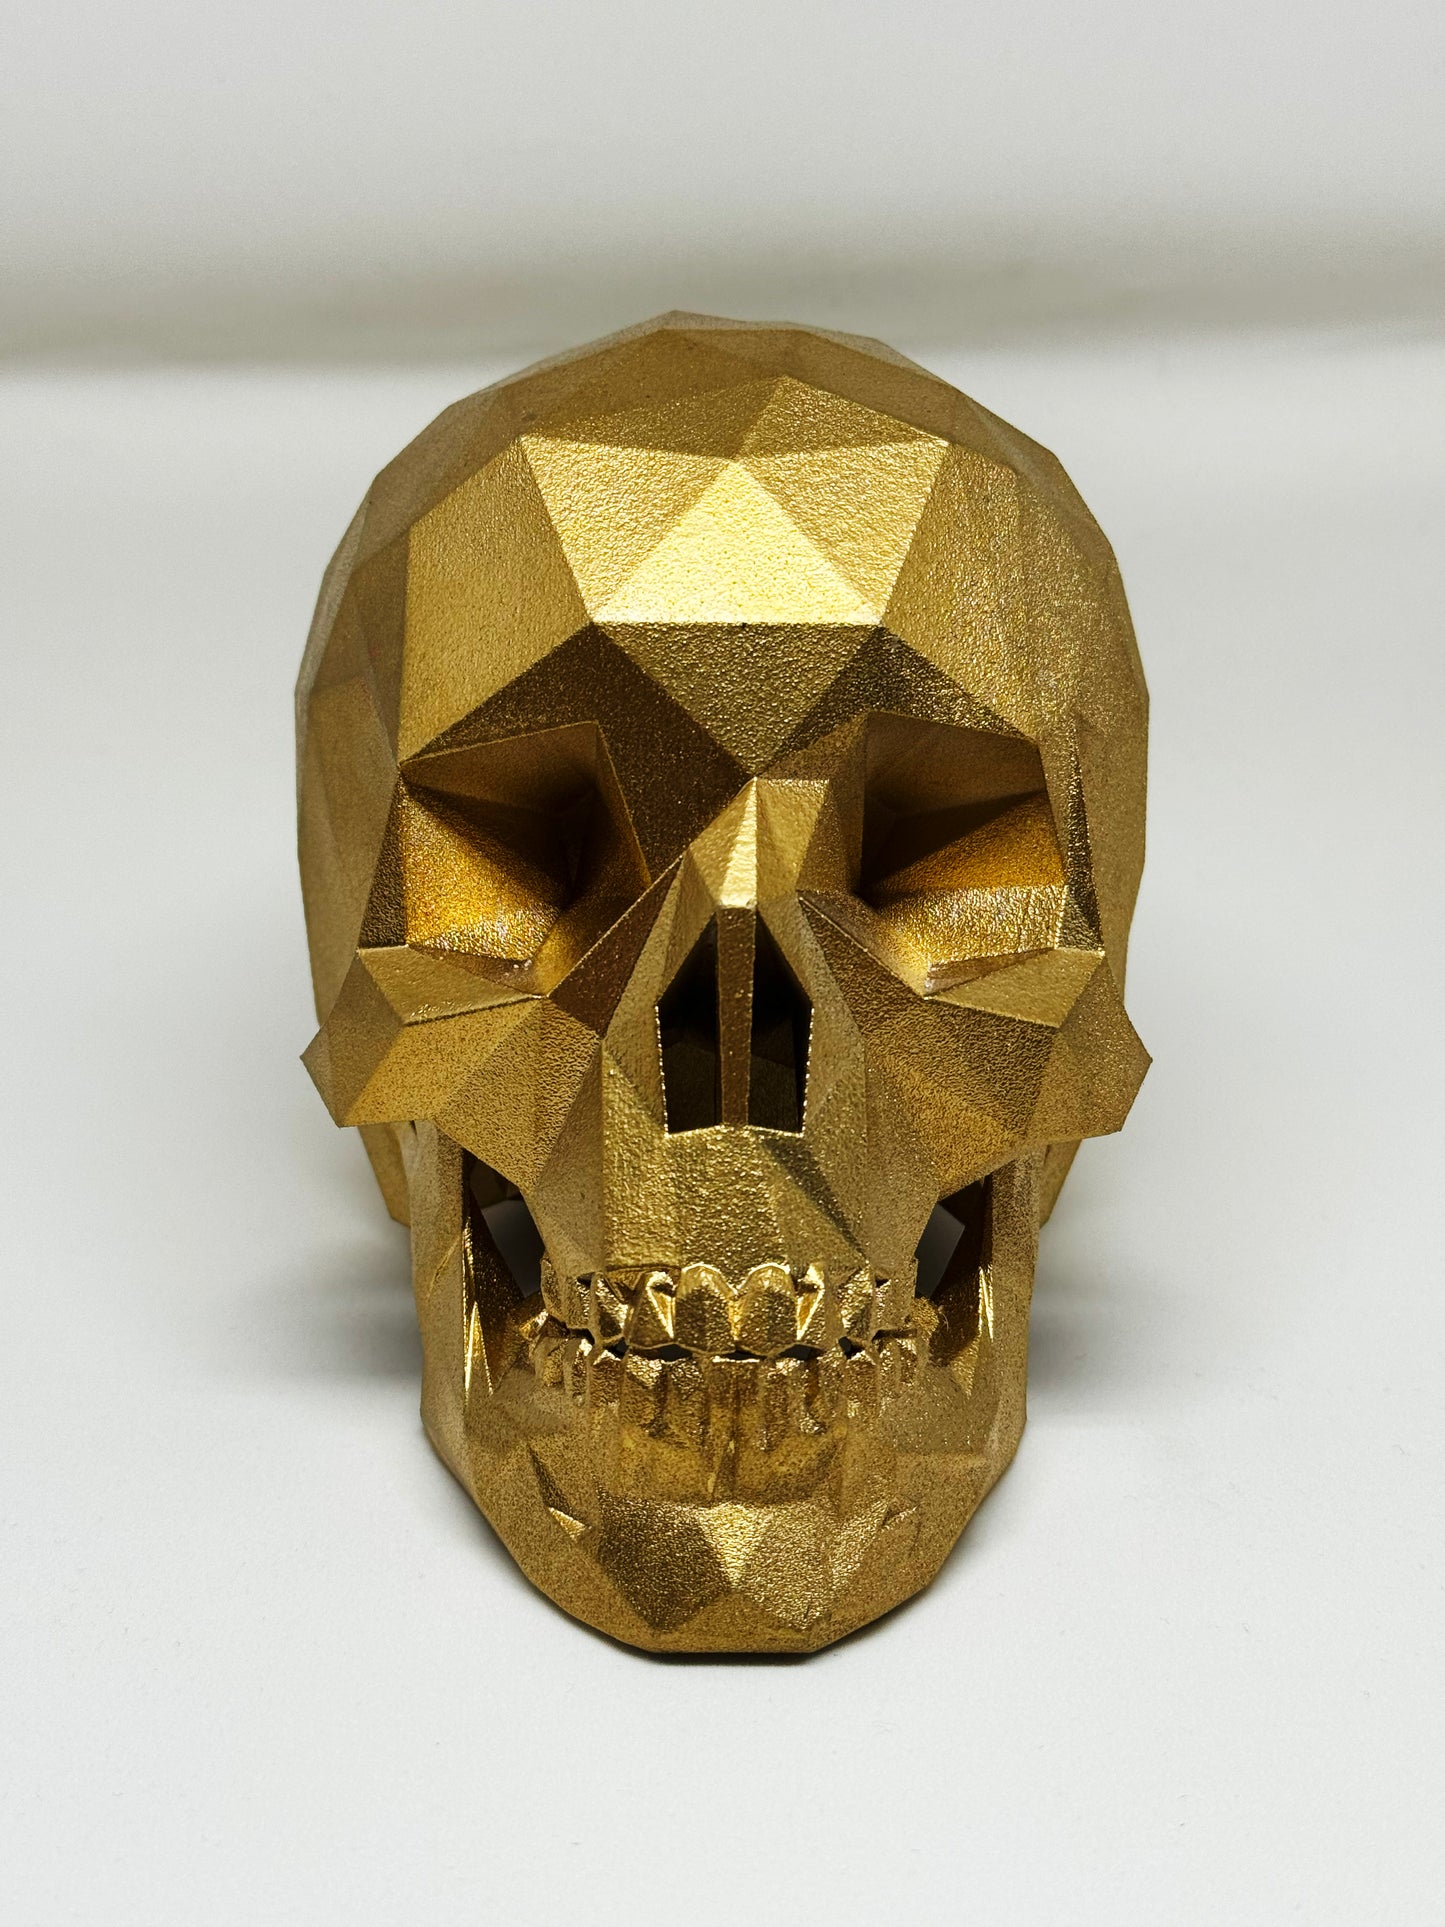 GILDED GOLD AFTERLIFE SKULL - 3D PRINTED SCULPTURE (/13)